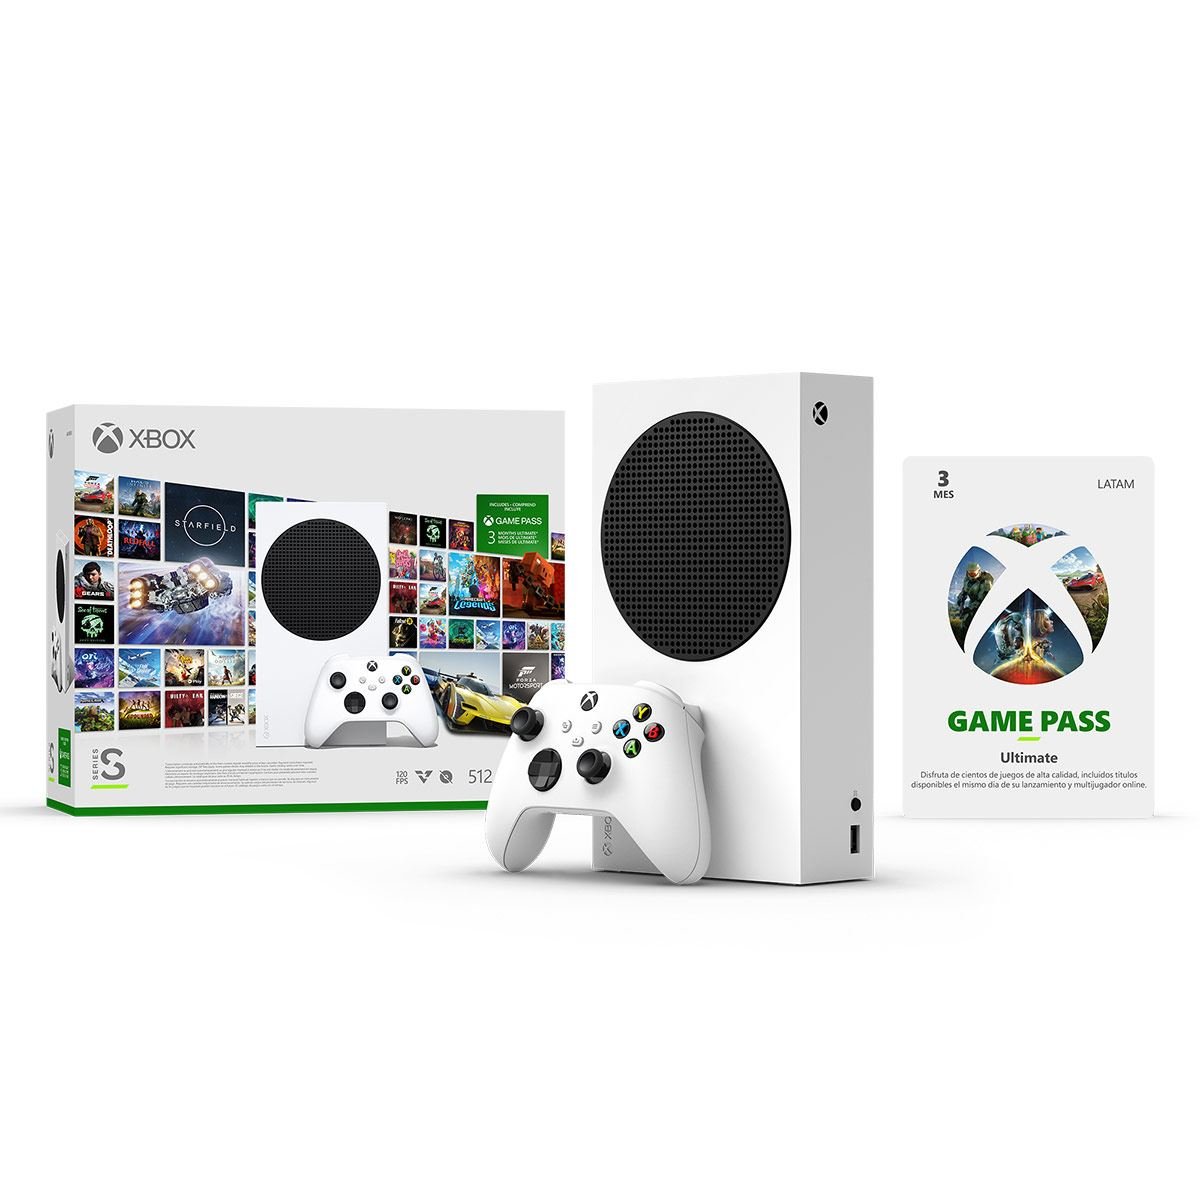 Arranca el finde con las mejores ofertas en juegos y contenidos de Xbox -  Generacion Xbox